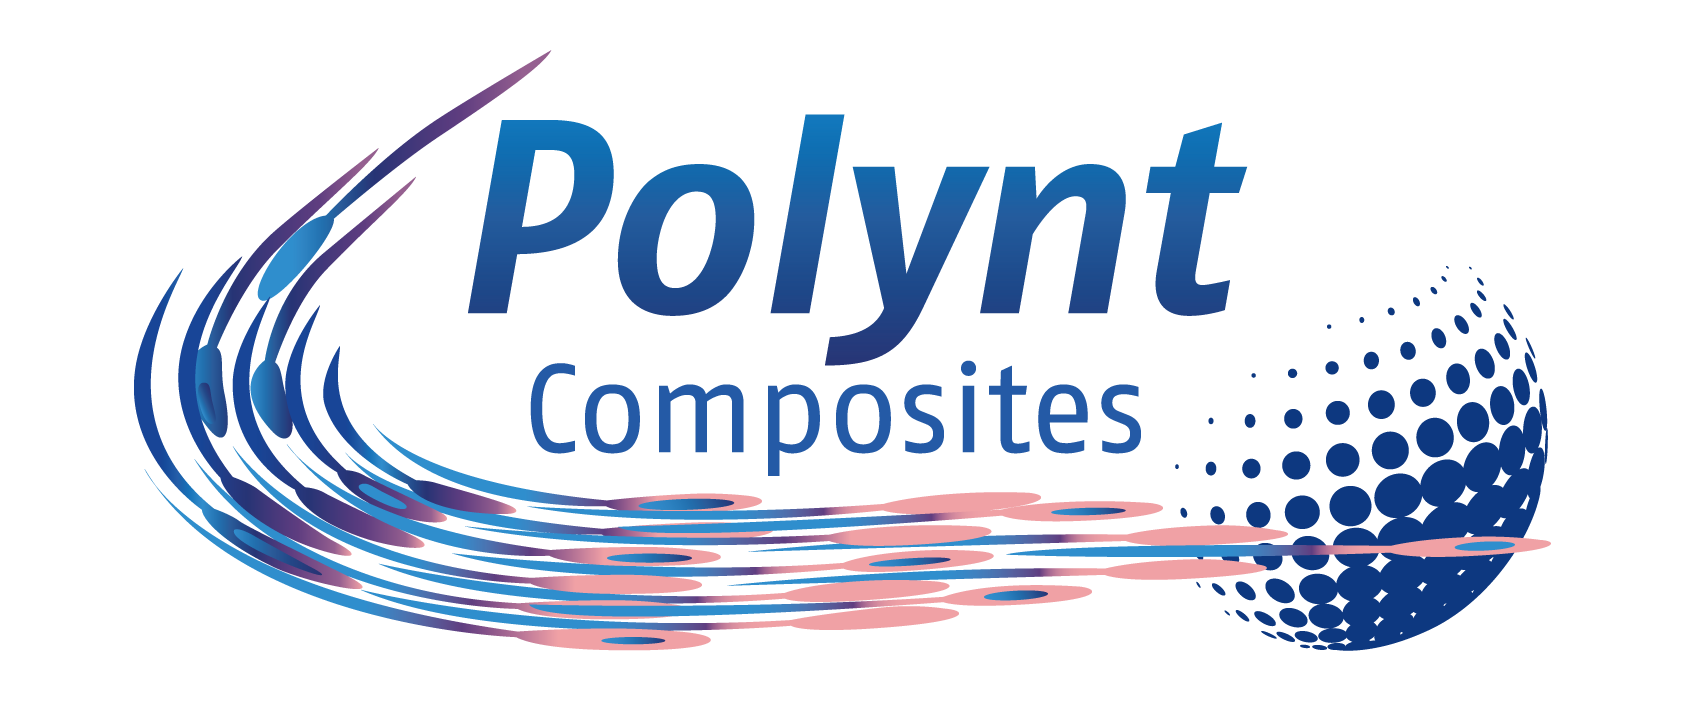 Polynt composites